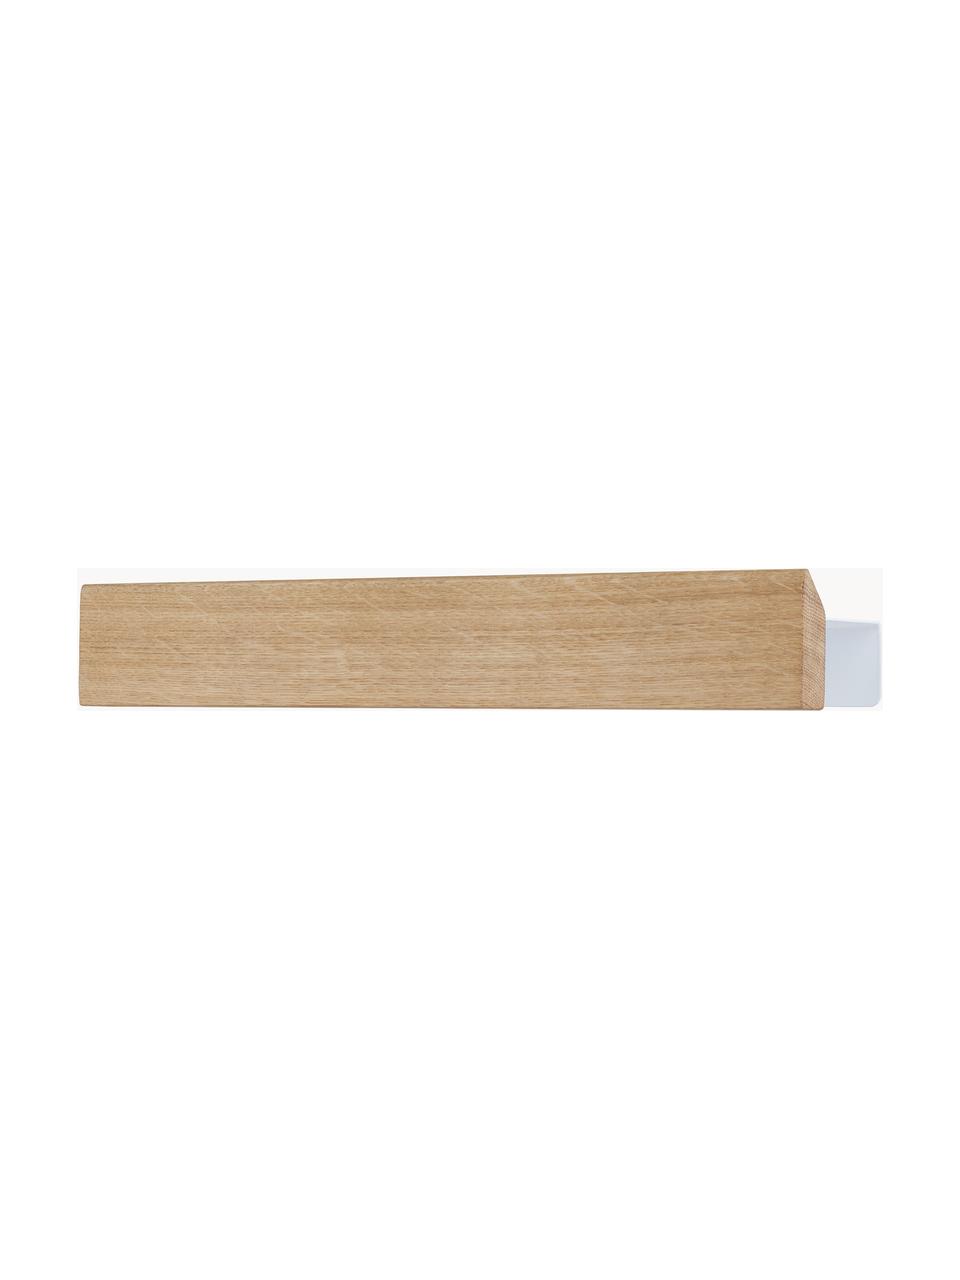 Banda magnetica Flex, Asta: legno di quercia, Legno chiaro, bianco, Larg. 40 x Alt. 6 cm